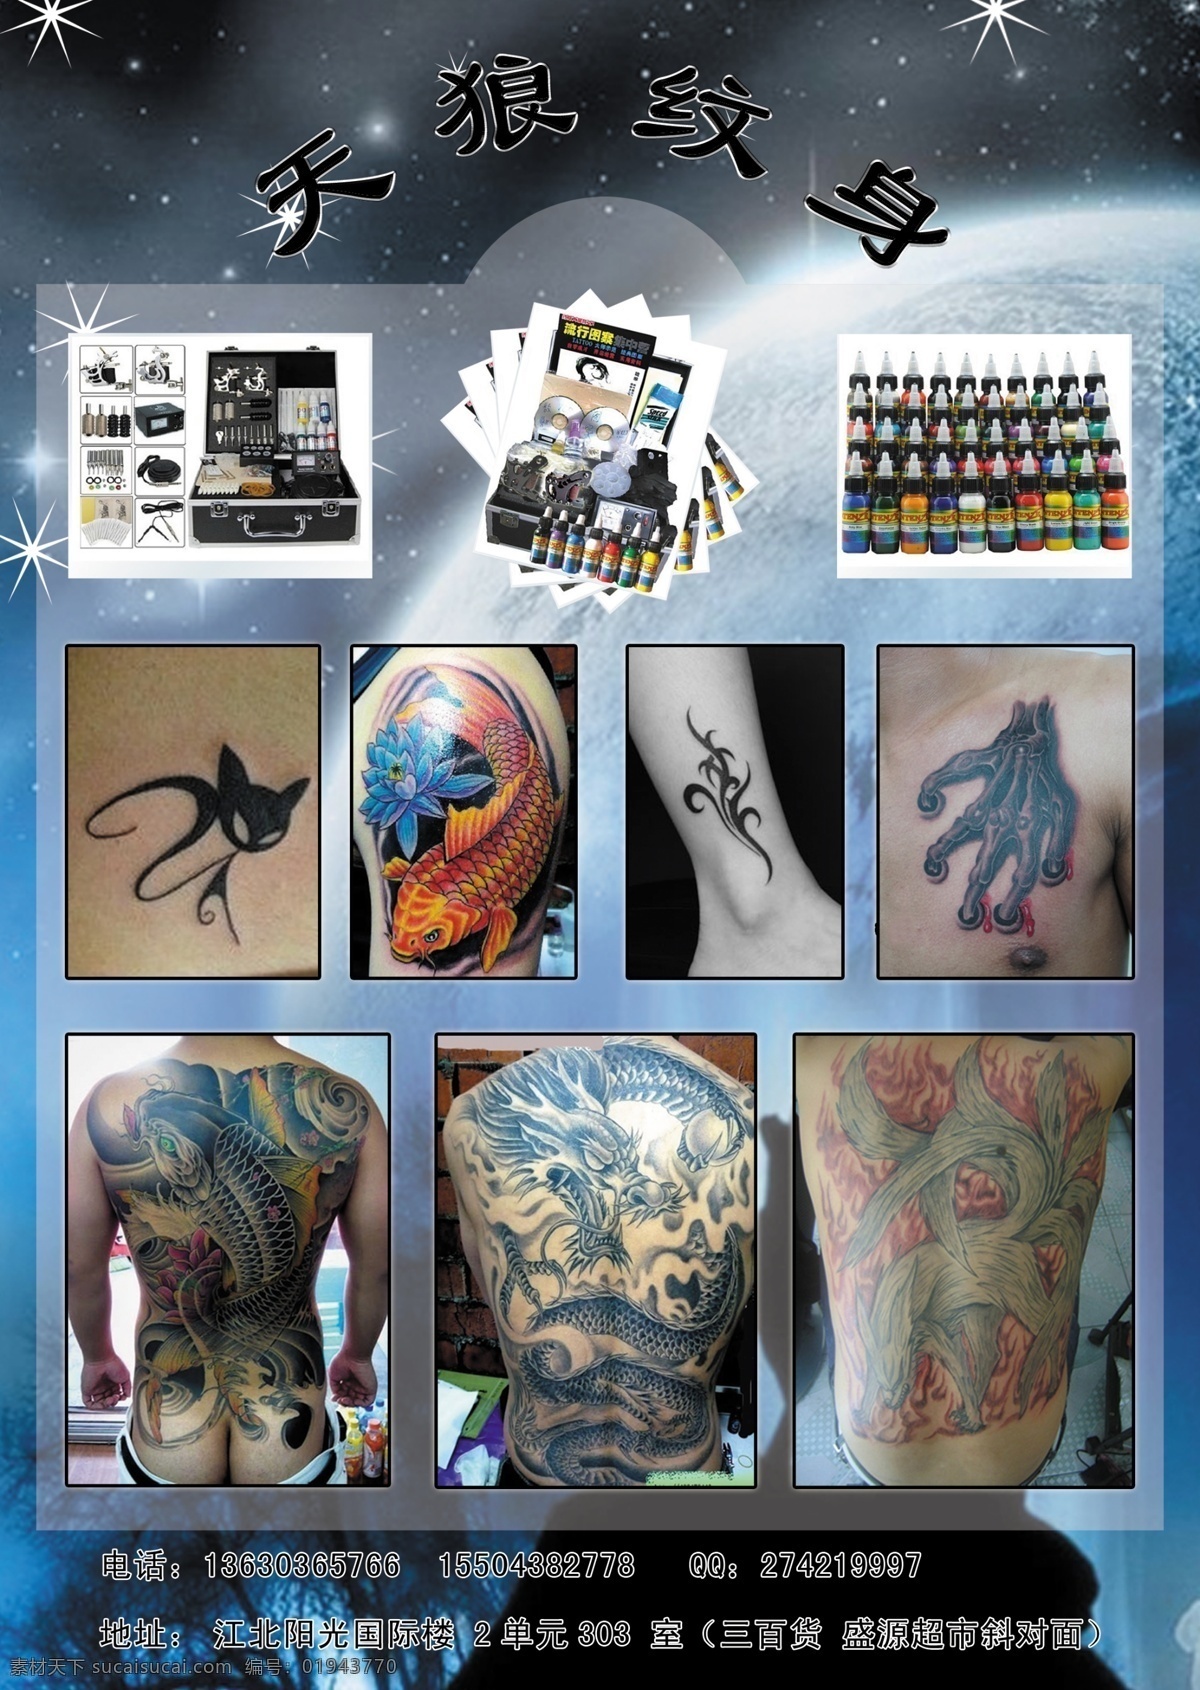 天狼纹身 纹身用品 电话 图 地址 骷髅 爪 兔 dm宣传单 广告设计模板 源文件